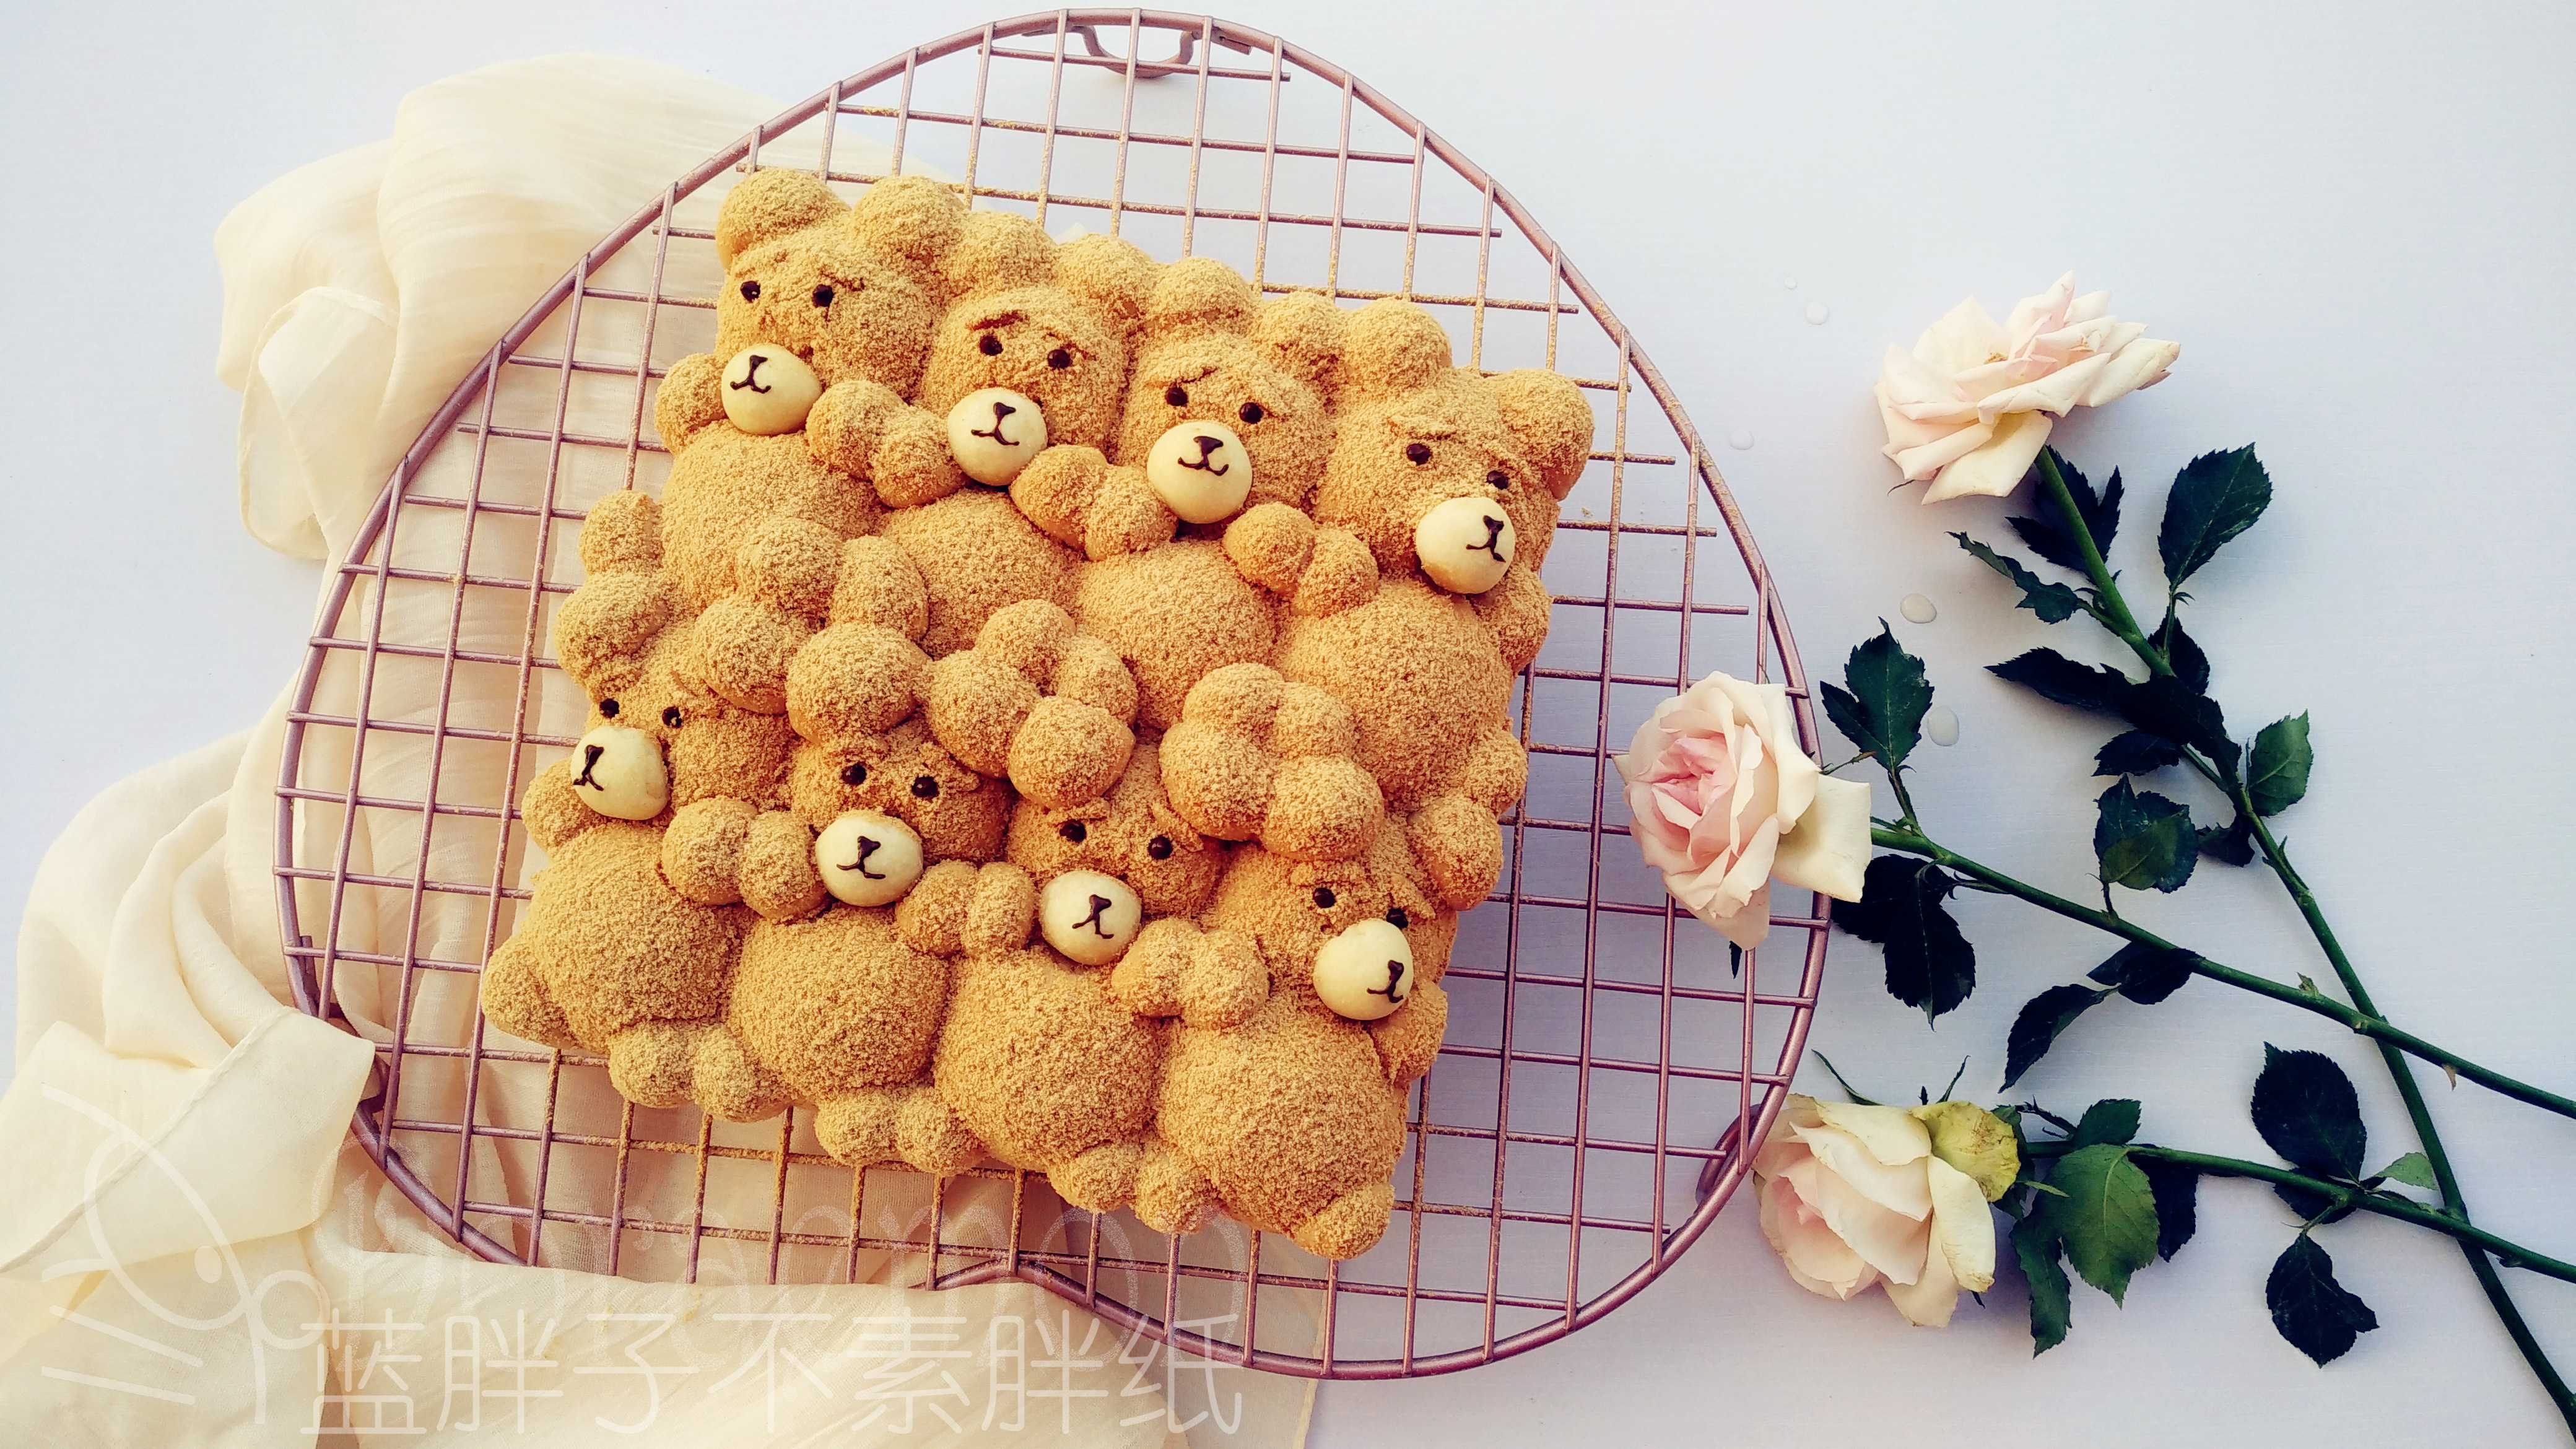 萌你一脸的泰迪熊挤挤面包的做法